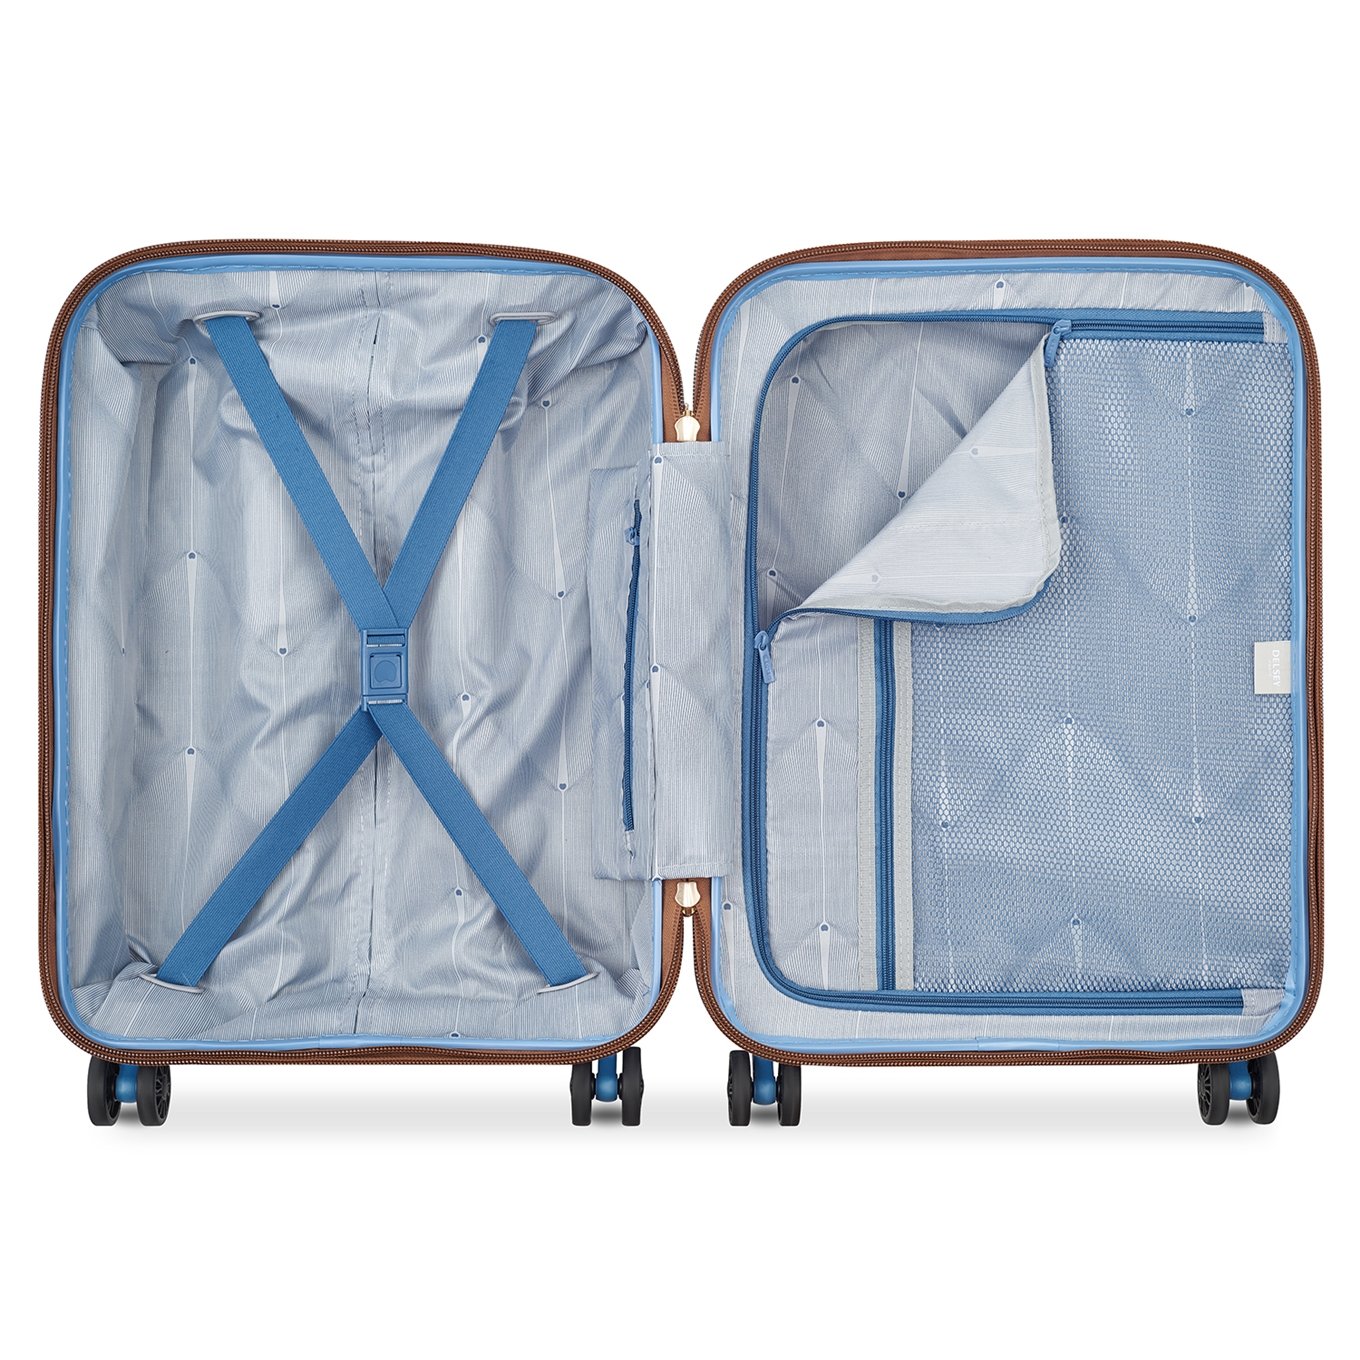 Goedkeuring eindpunt wortel Handbagage Koffers 55 x 40 x 20 Kopen? Ontdek de uitgebreide collectie |  Travelbags.nl